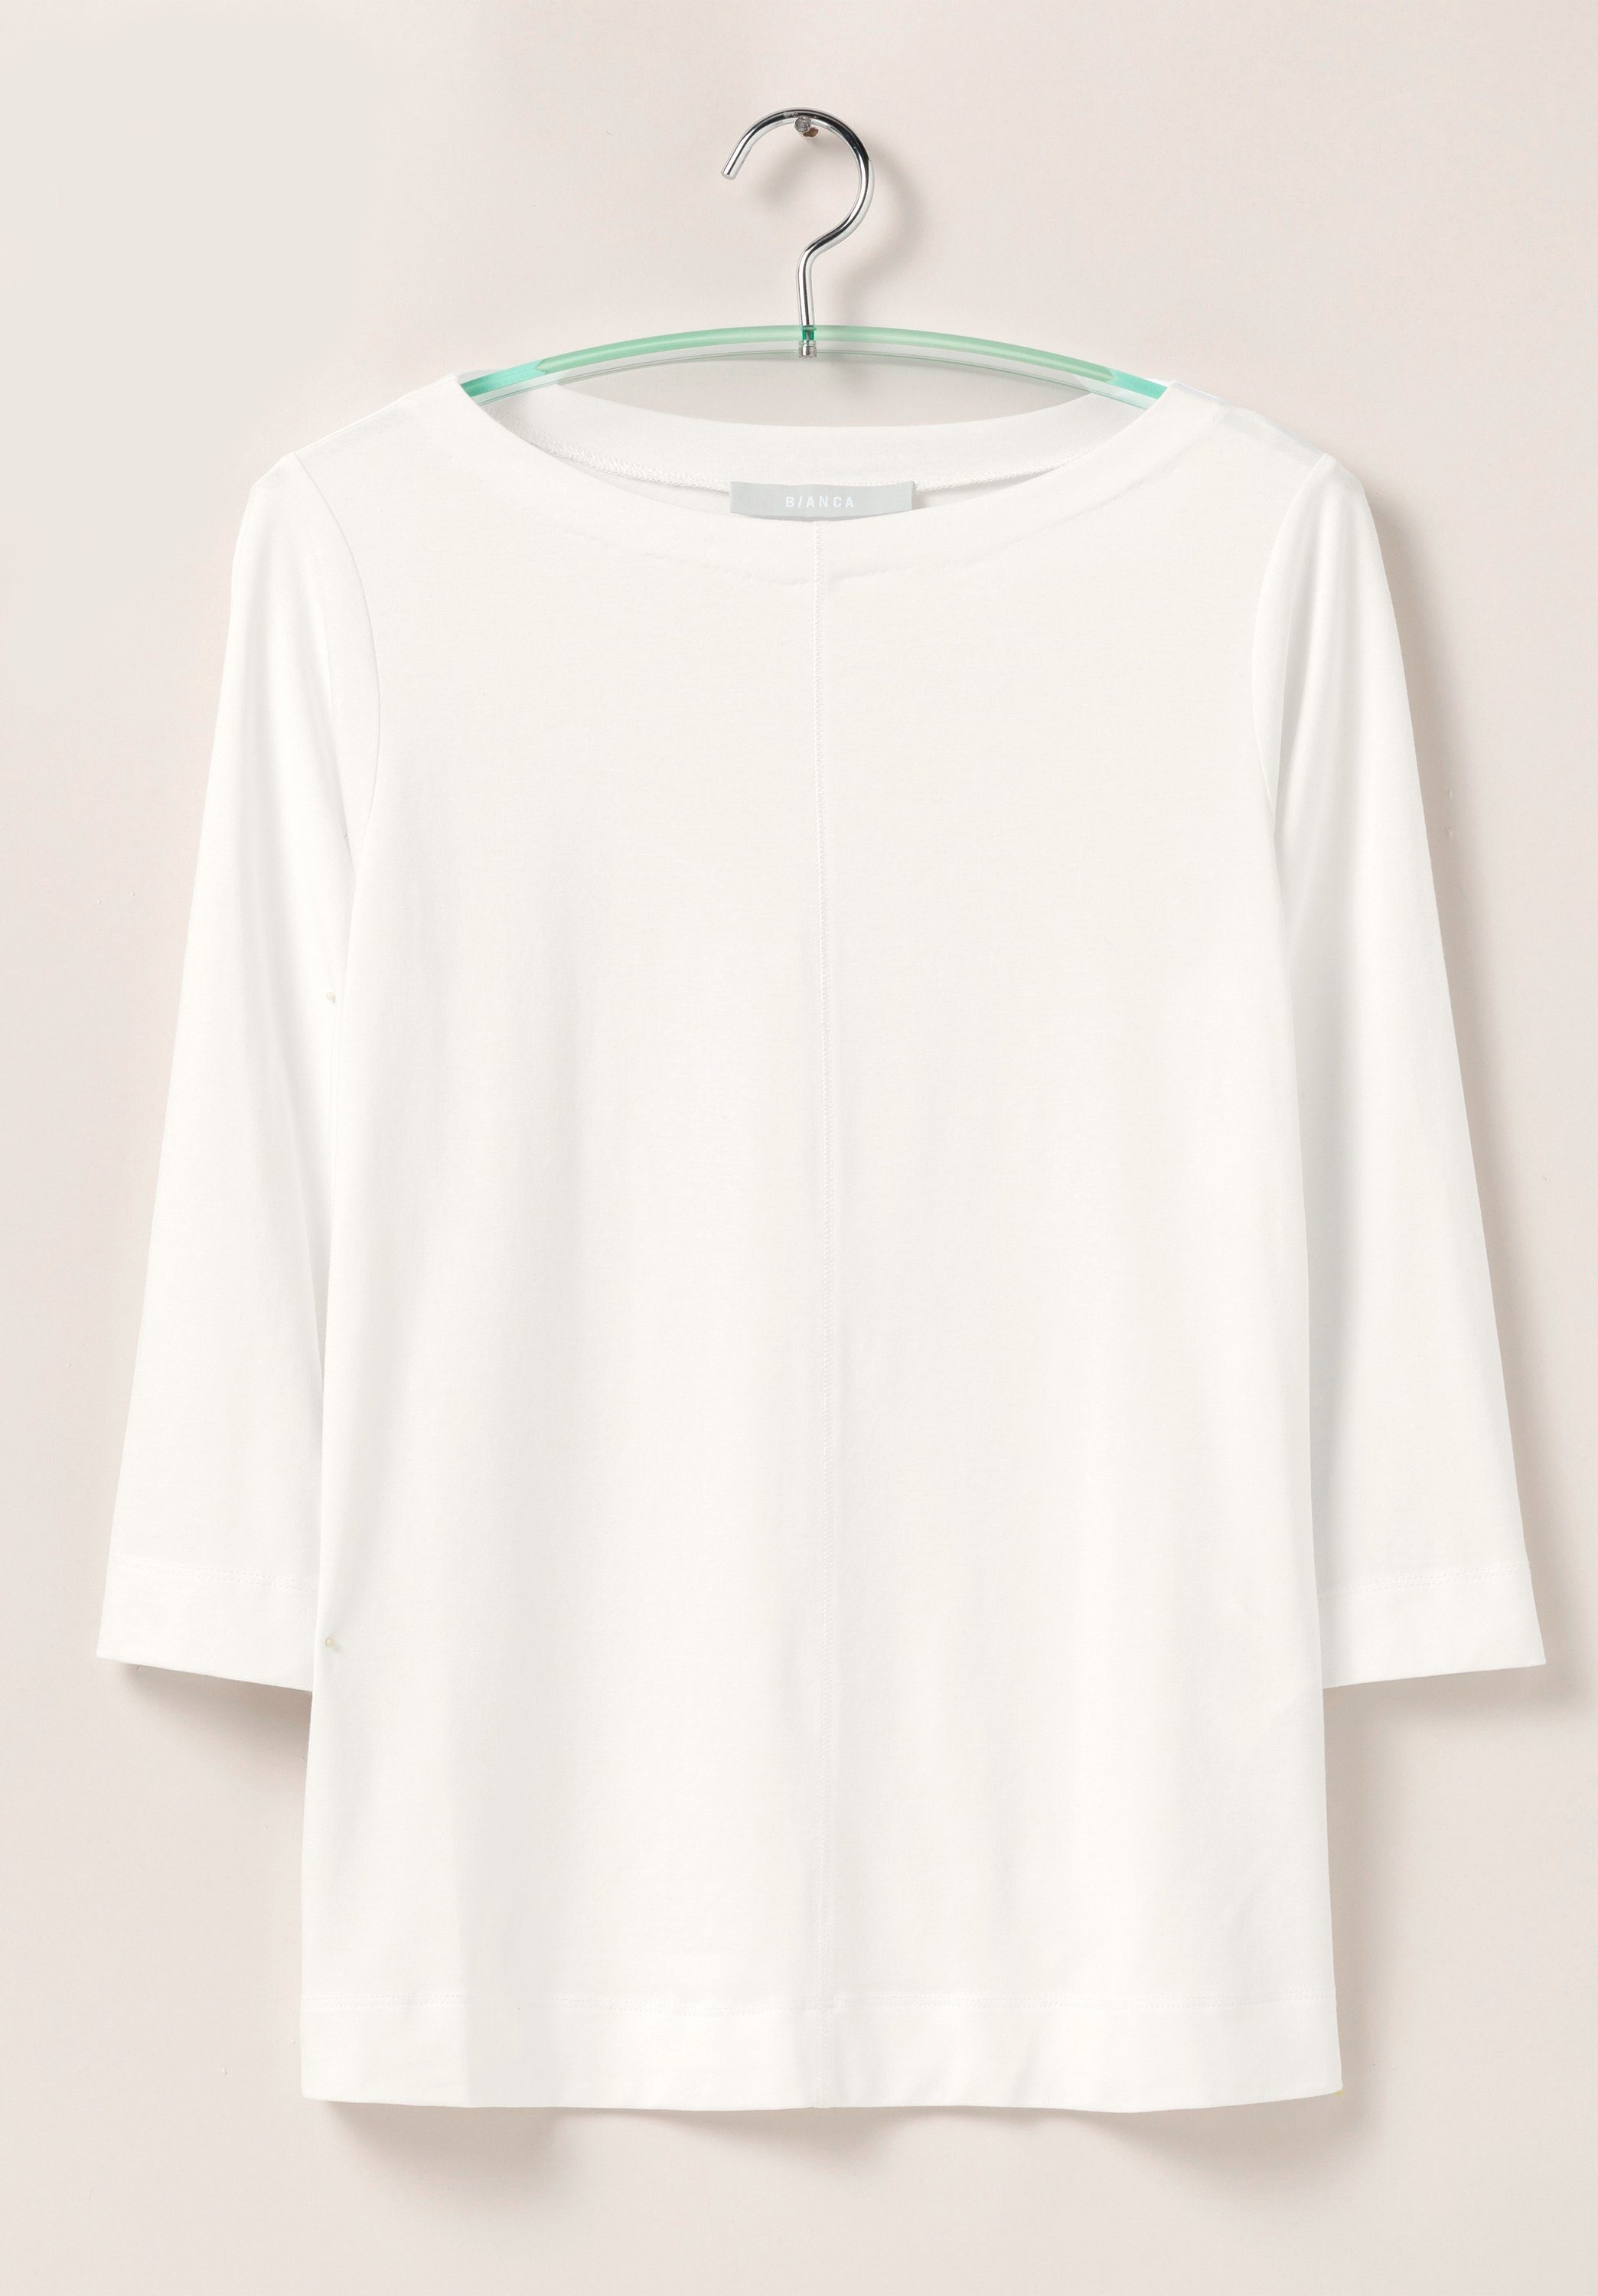 Trendfarben creme und 3/4-Arm-Shirt modernem in DIELLA Look bianca angesagten